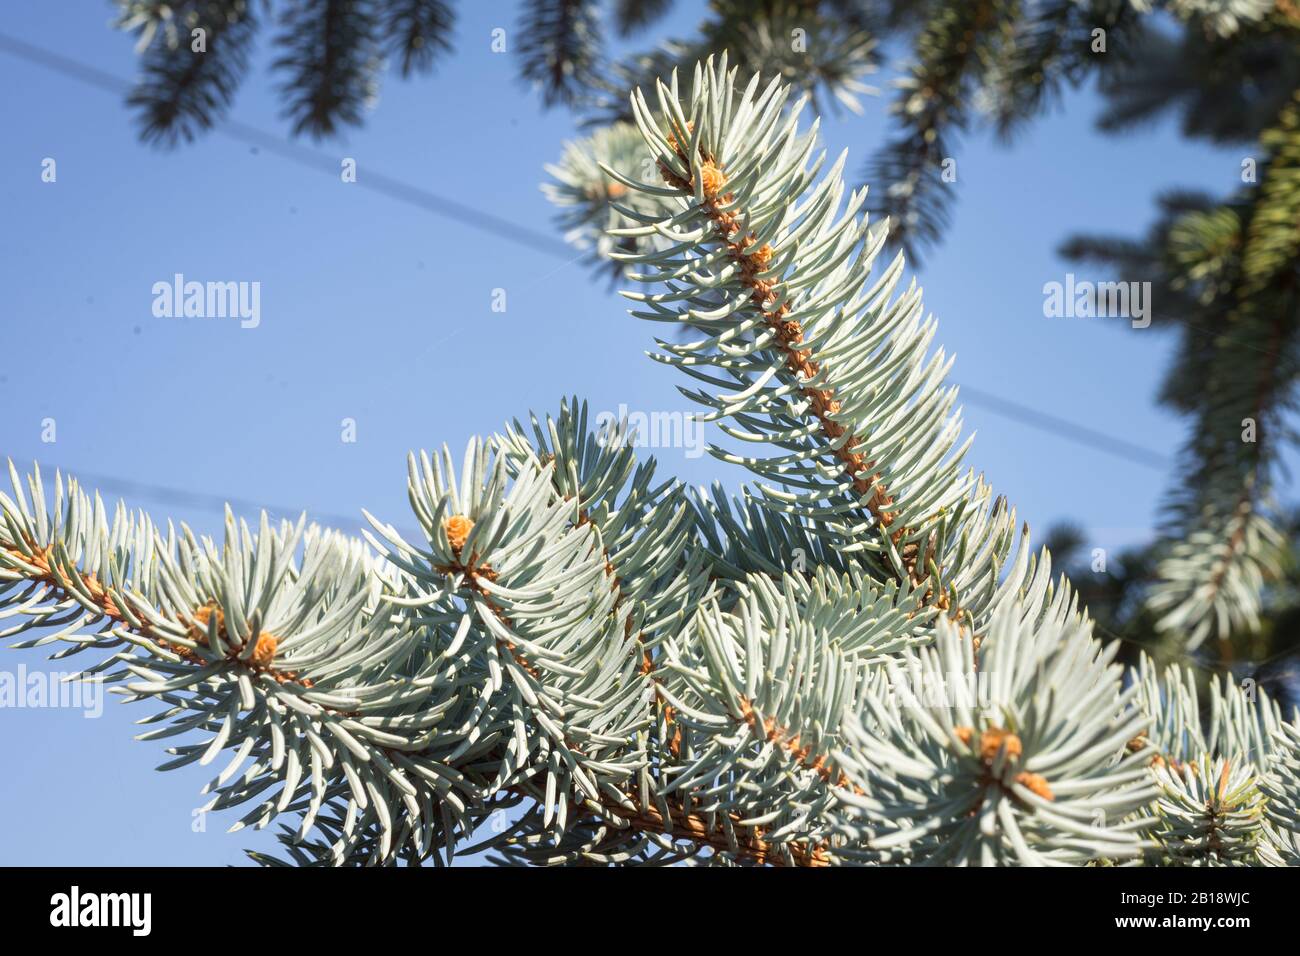 Pousses de Picea pungens 'Hoopsii' (épinette bleue du Colorado) avec de belles aiguilles de couleur bleu argenté Banque D'Images